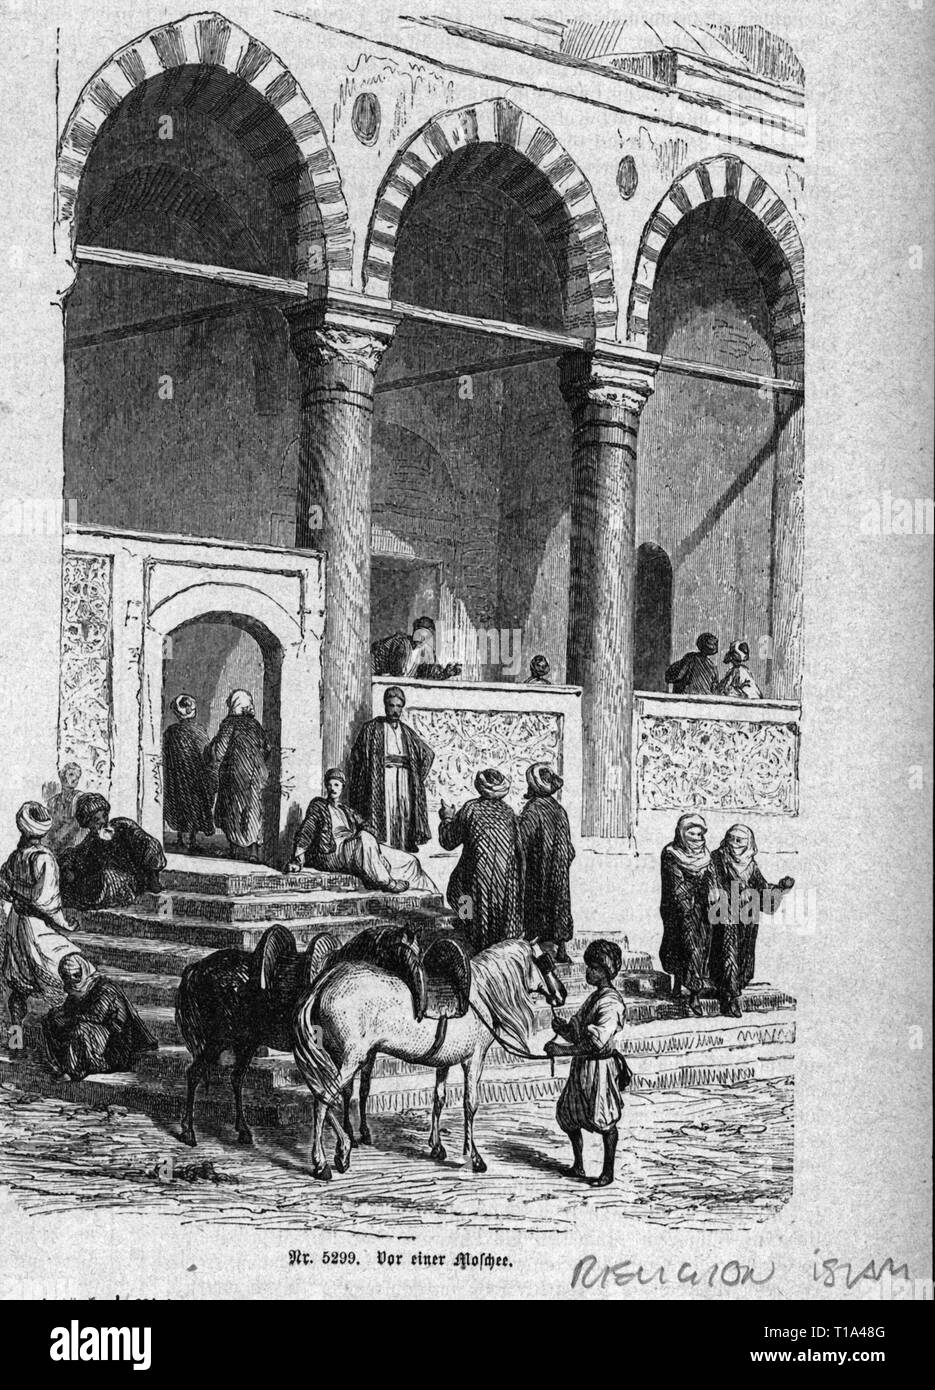 La religione islam, davanti ad una moschea, incisione su legno, seconda metà del XIX secolo, Additional-Rights-Clearance-Info-Not-Available Foto Stock